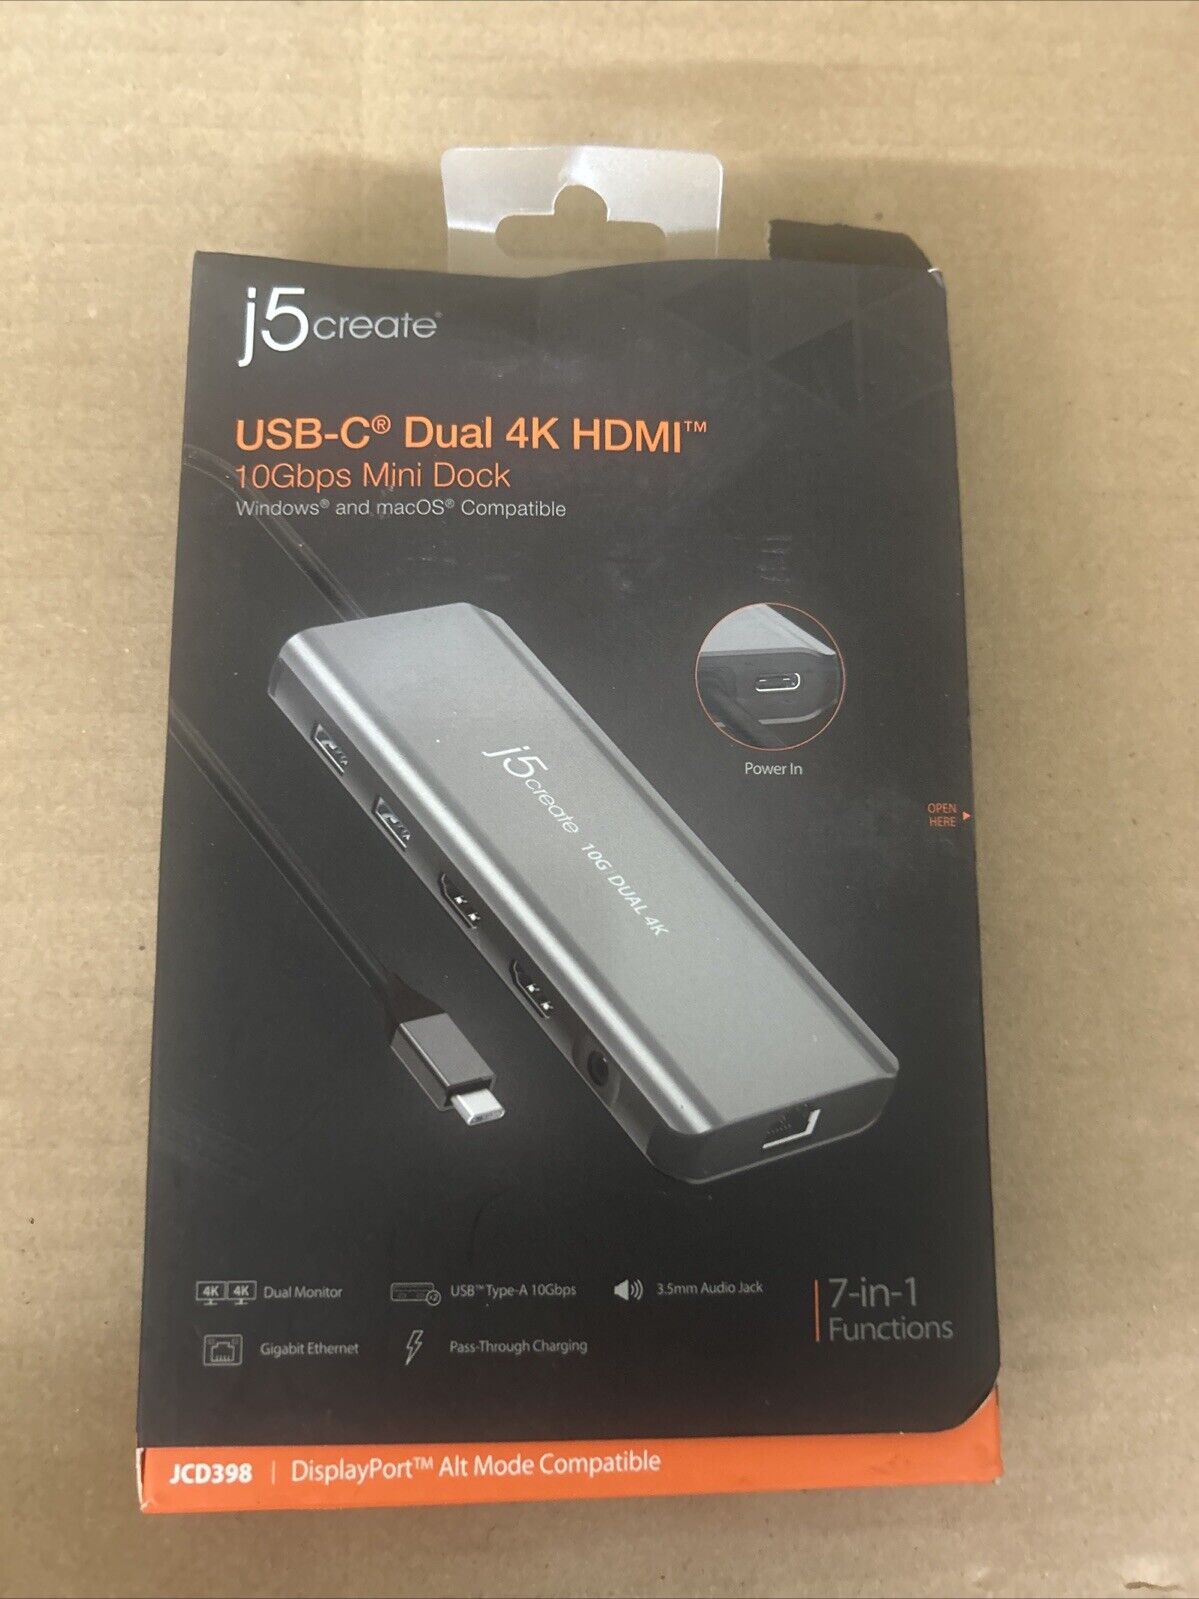 New j5create USB-C Dual 4K HDMI 10Gbps Mini Dock - 100W, JCD398